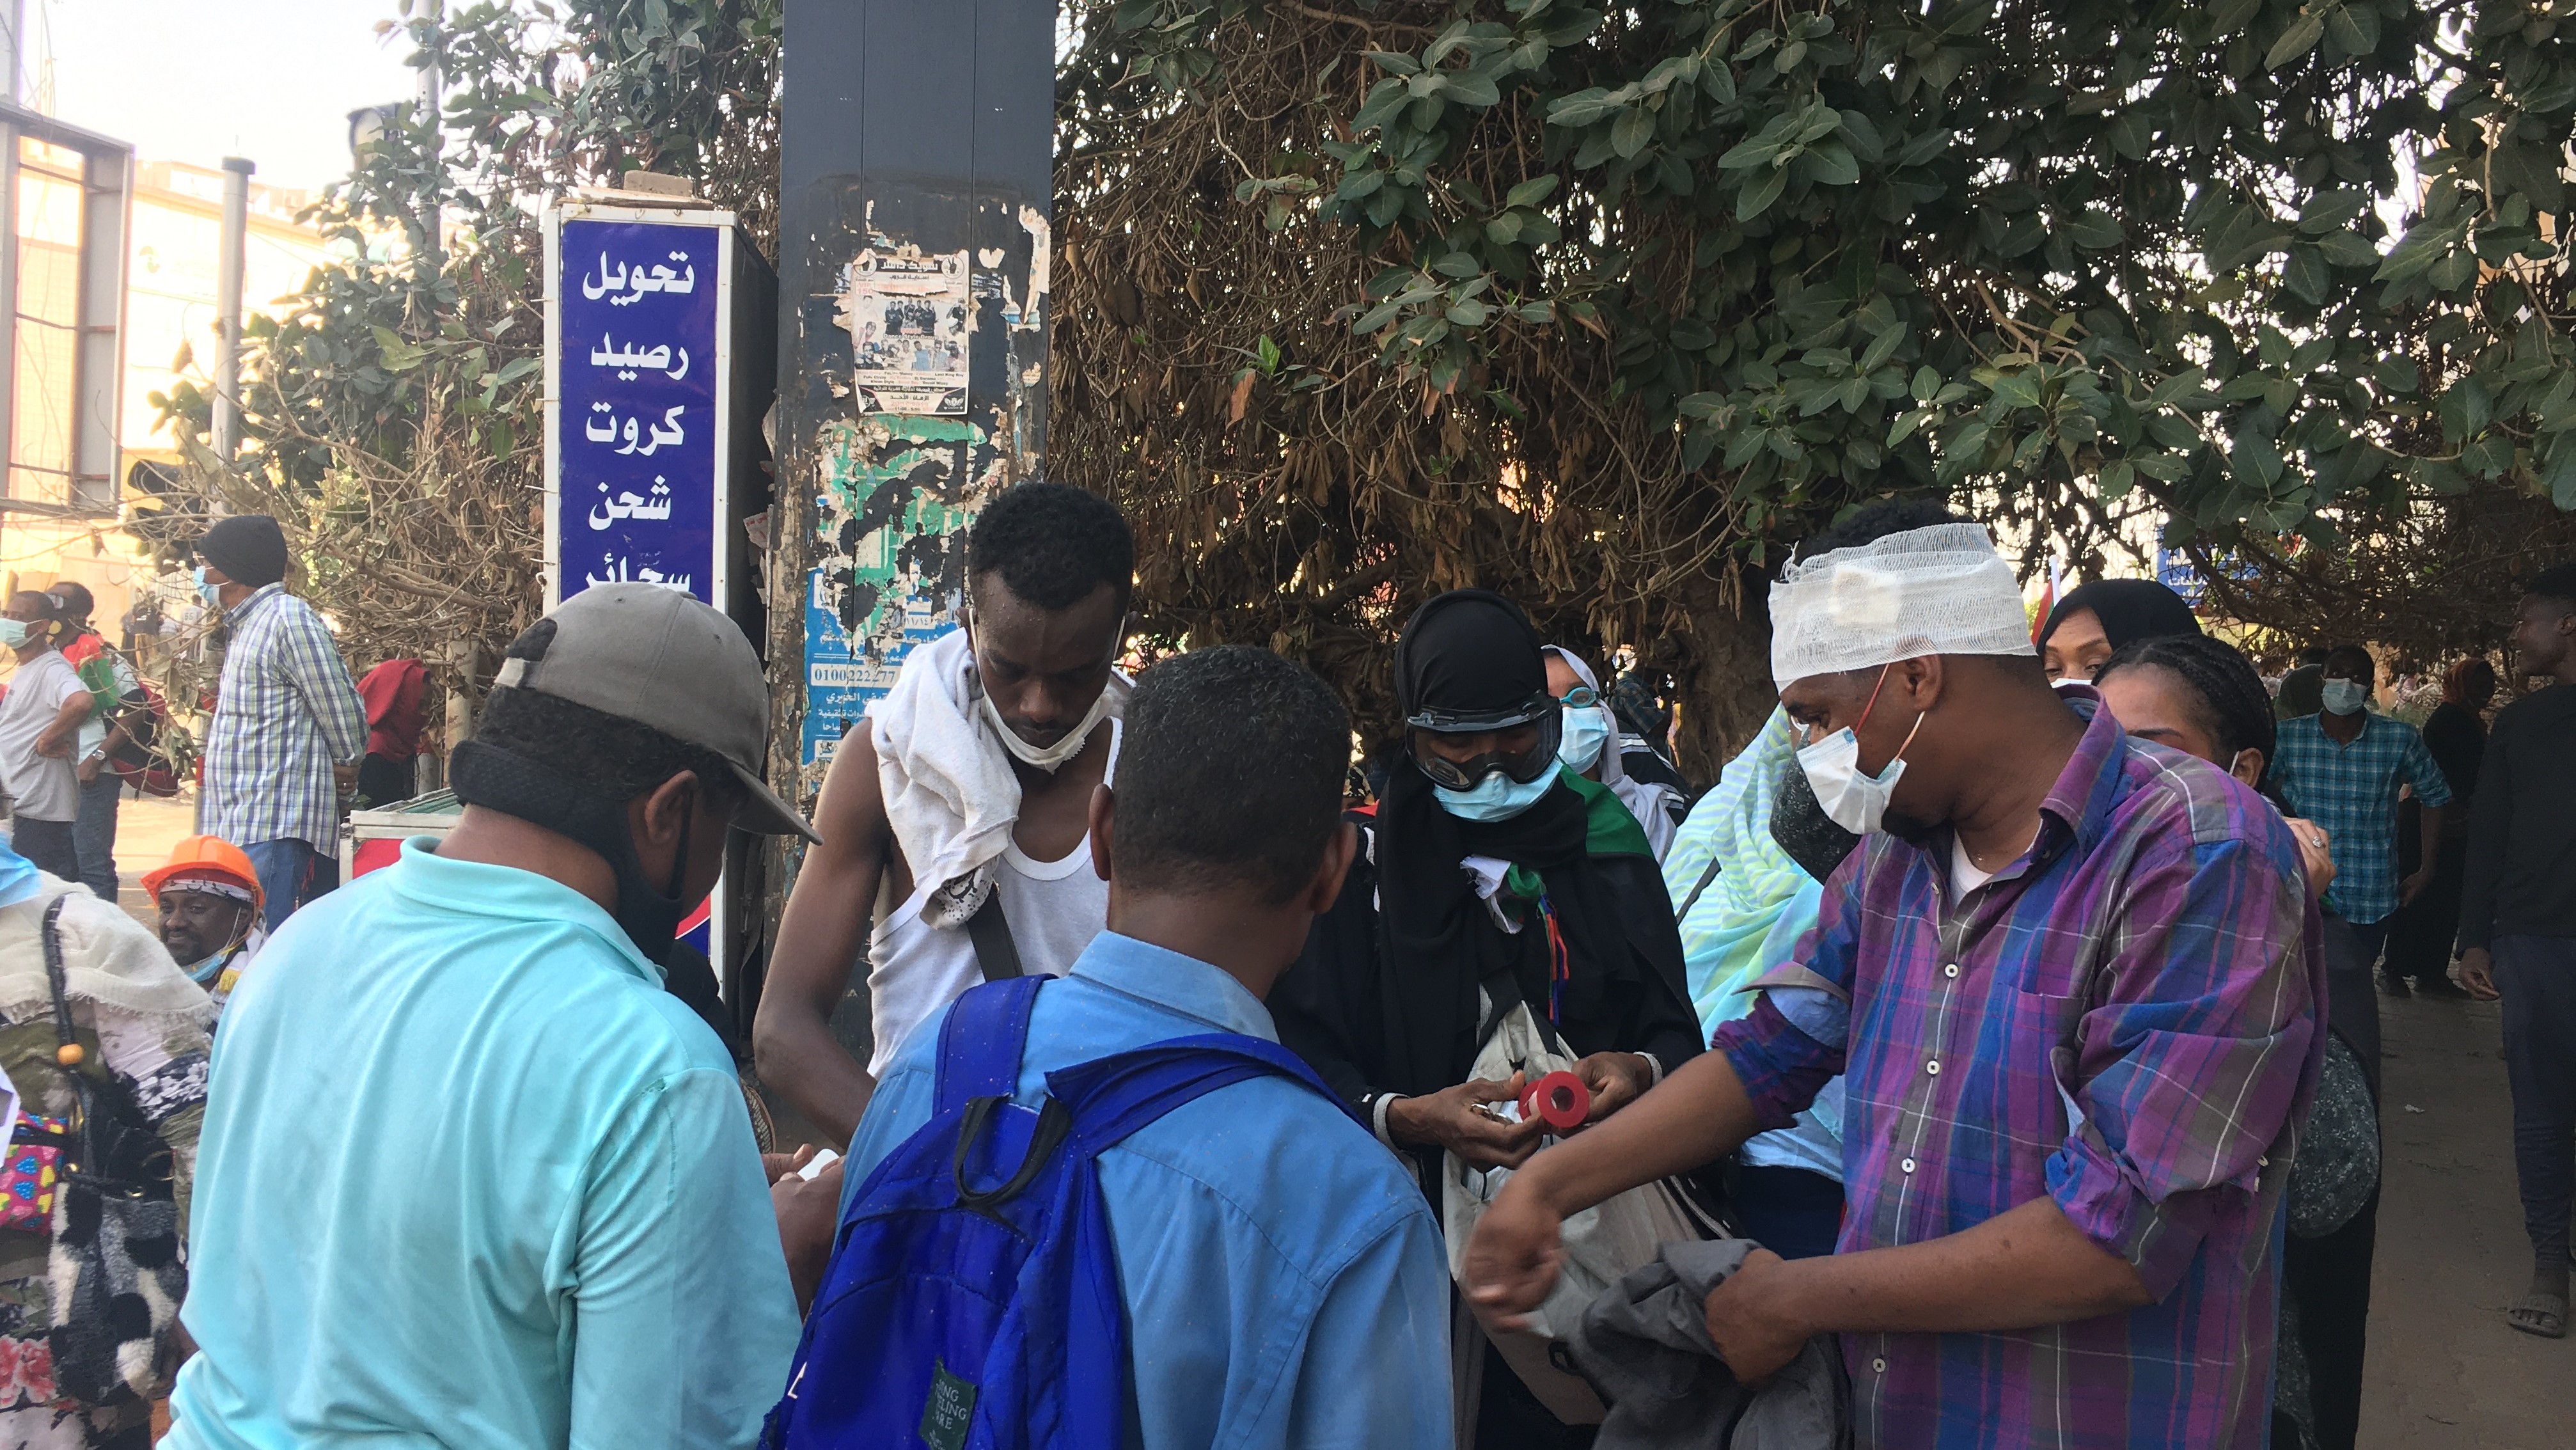 Locals prepare to protest in Khartoum against Sudan's ruling military junta, January 2022 (photo: Eduard Cousin)